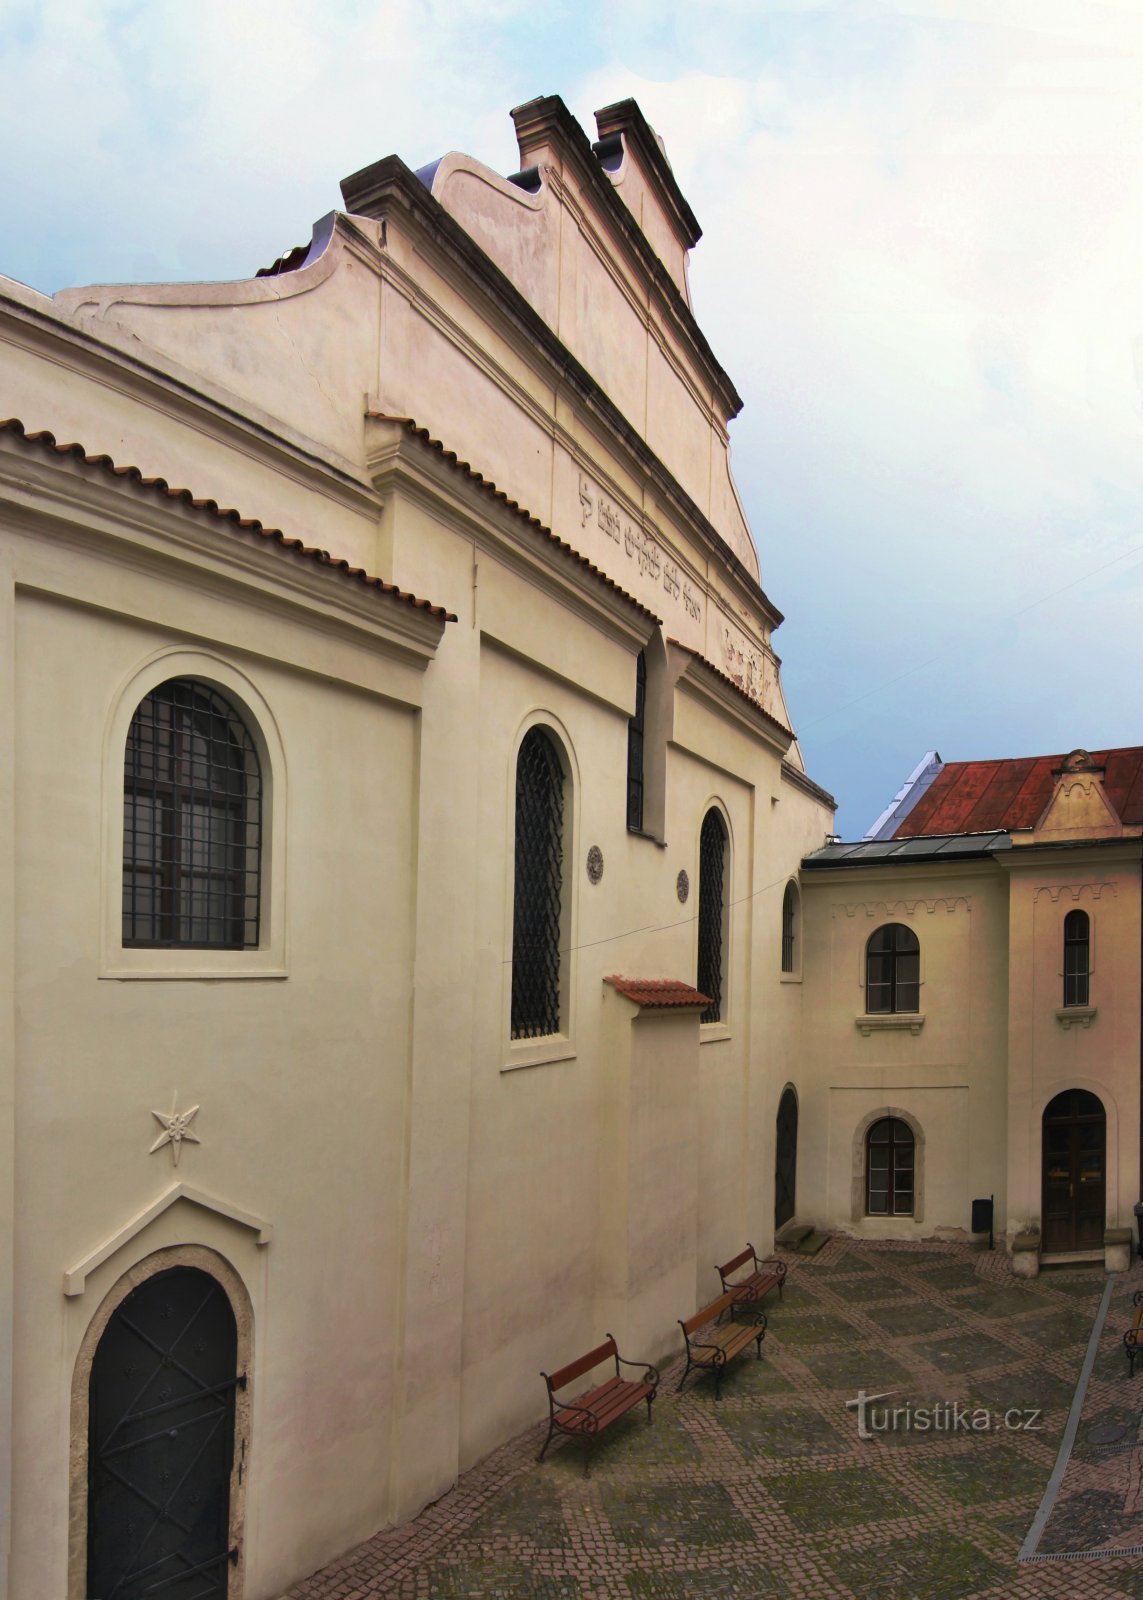 Gerusalemme sull'Elba - Sinagoga di Colonia e cimiteri ebraici